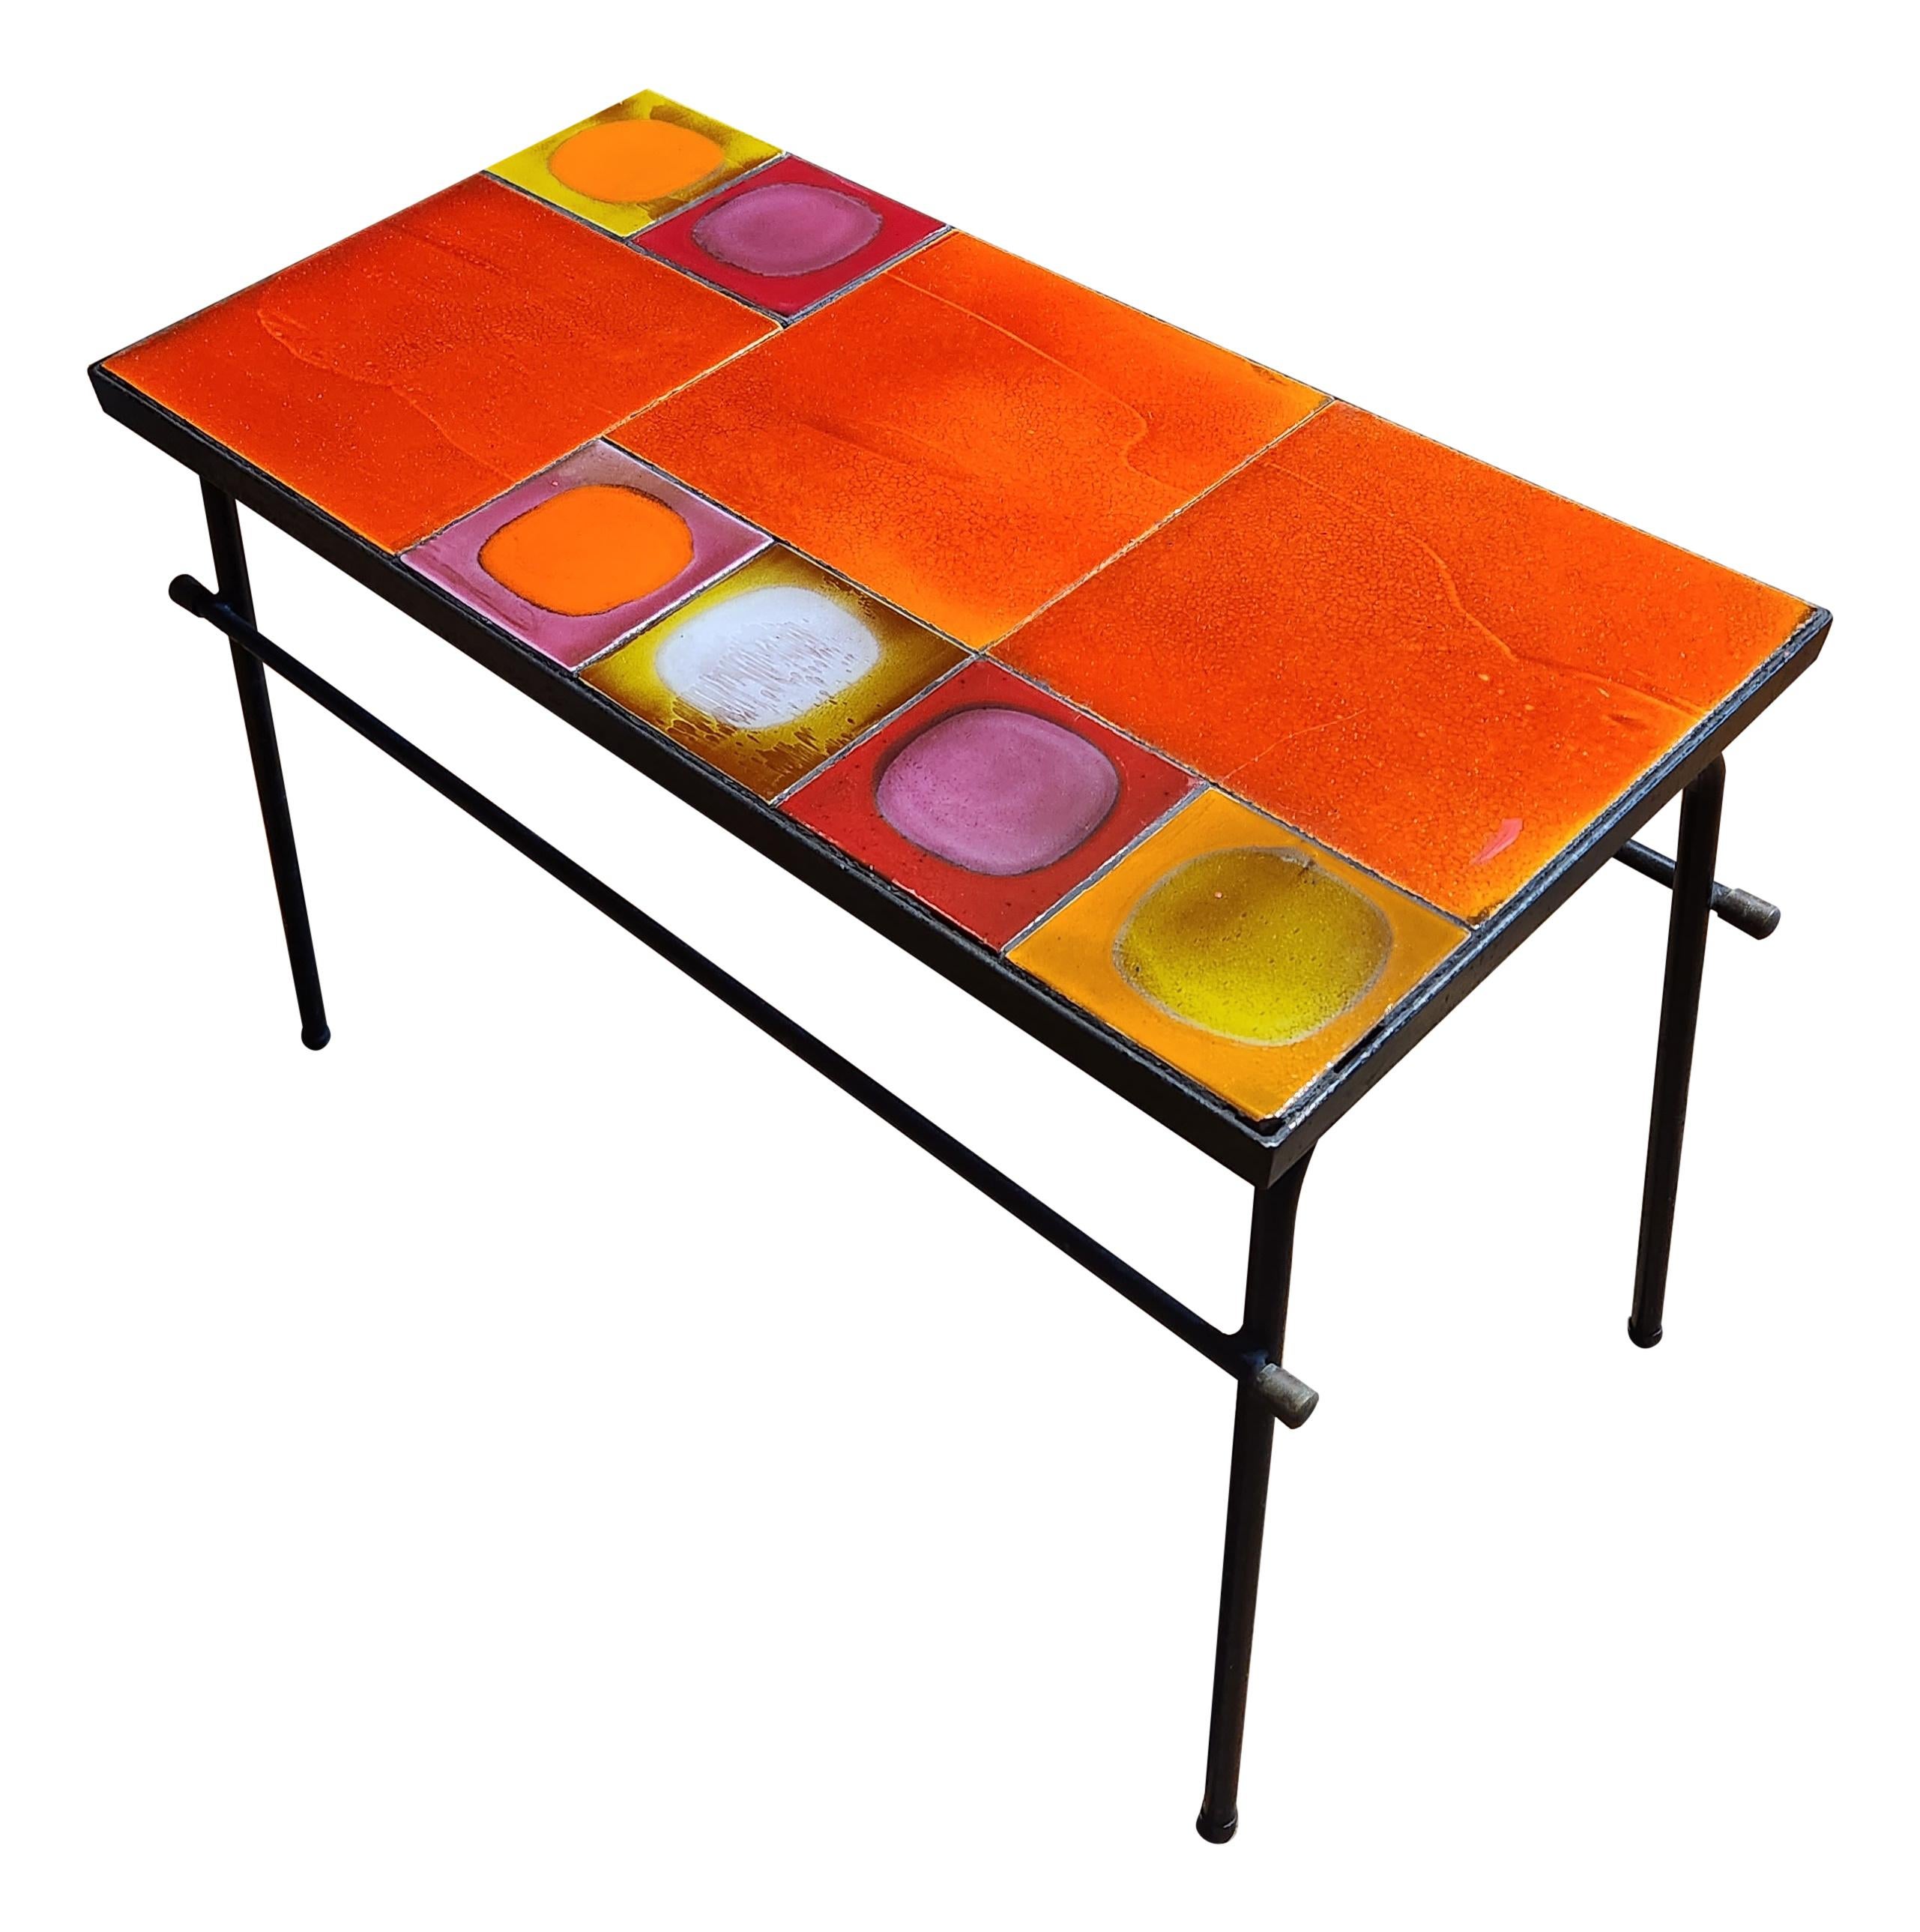 Cette table basse est composée de carreaux de céramique colorés fabriqués dans les années 1970 par Roger Capron, l'un des céramistes les plus connus de l'ère moderne.  Les plus petits carreaux sont des 